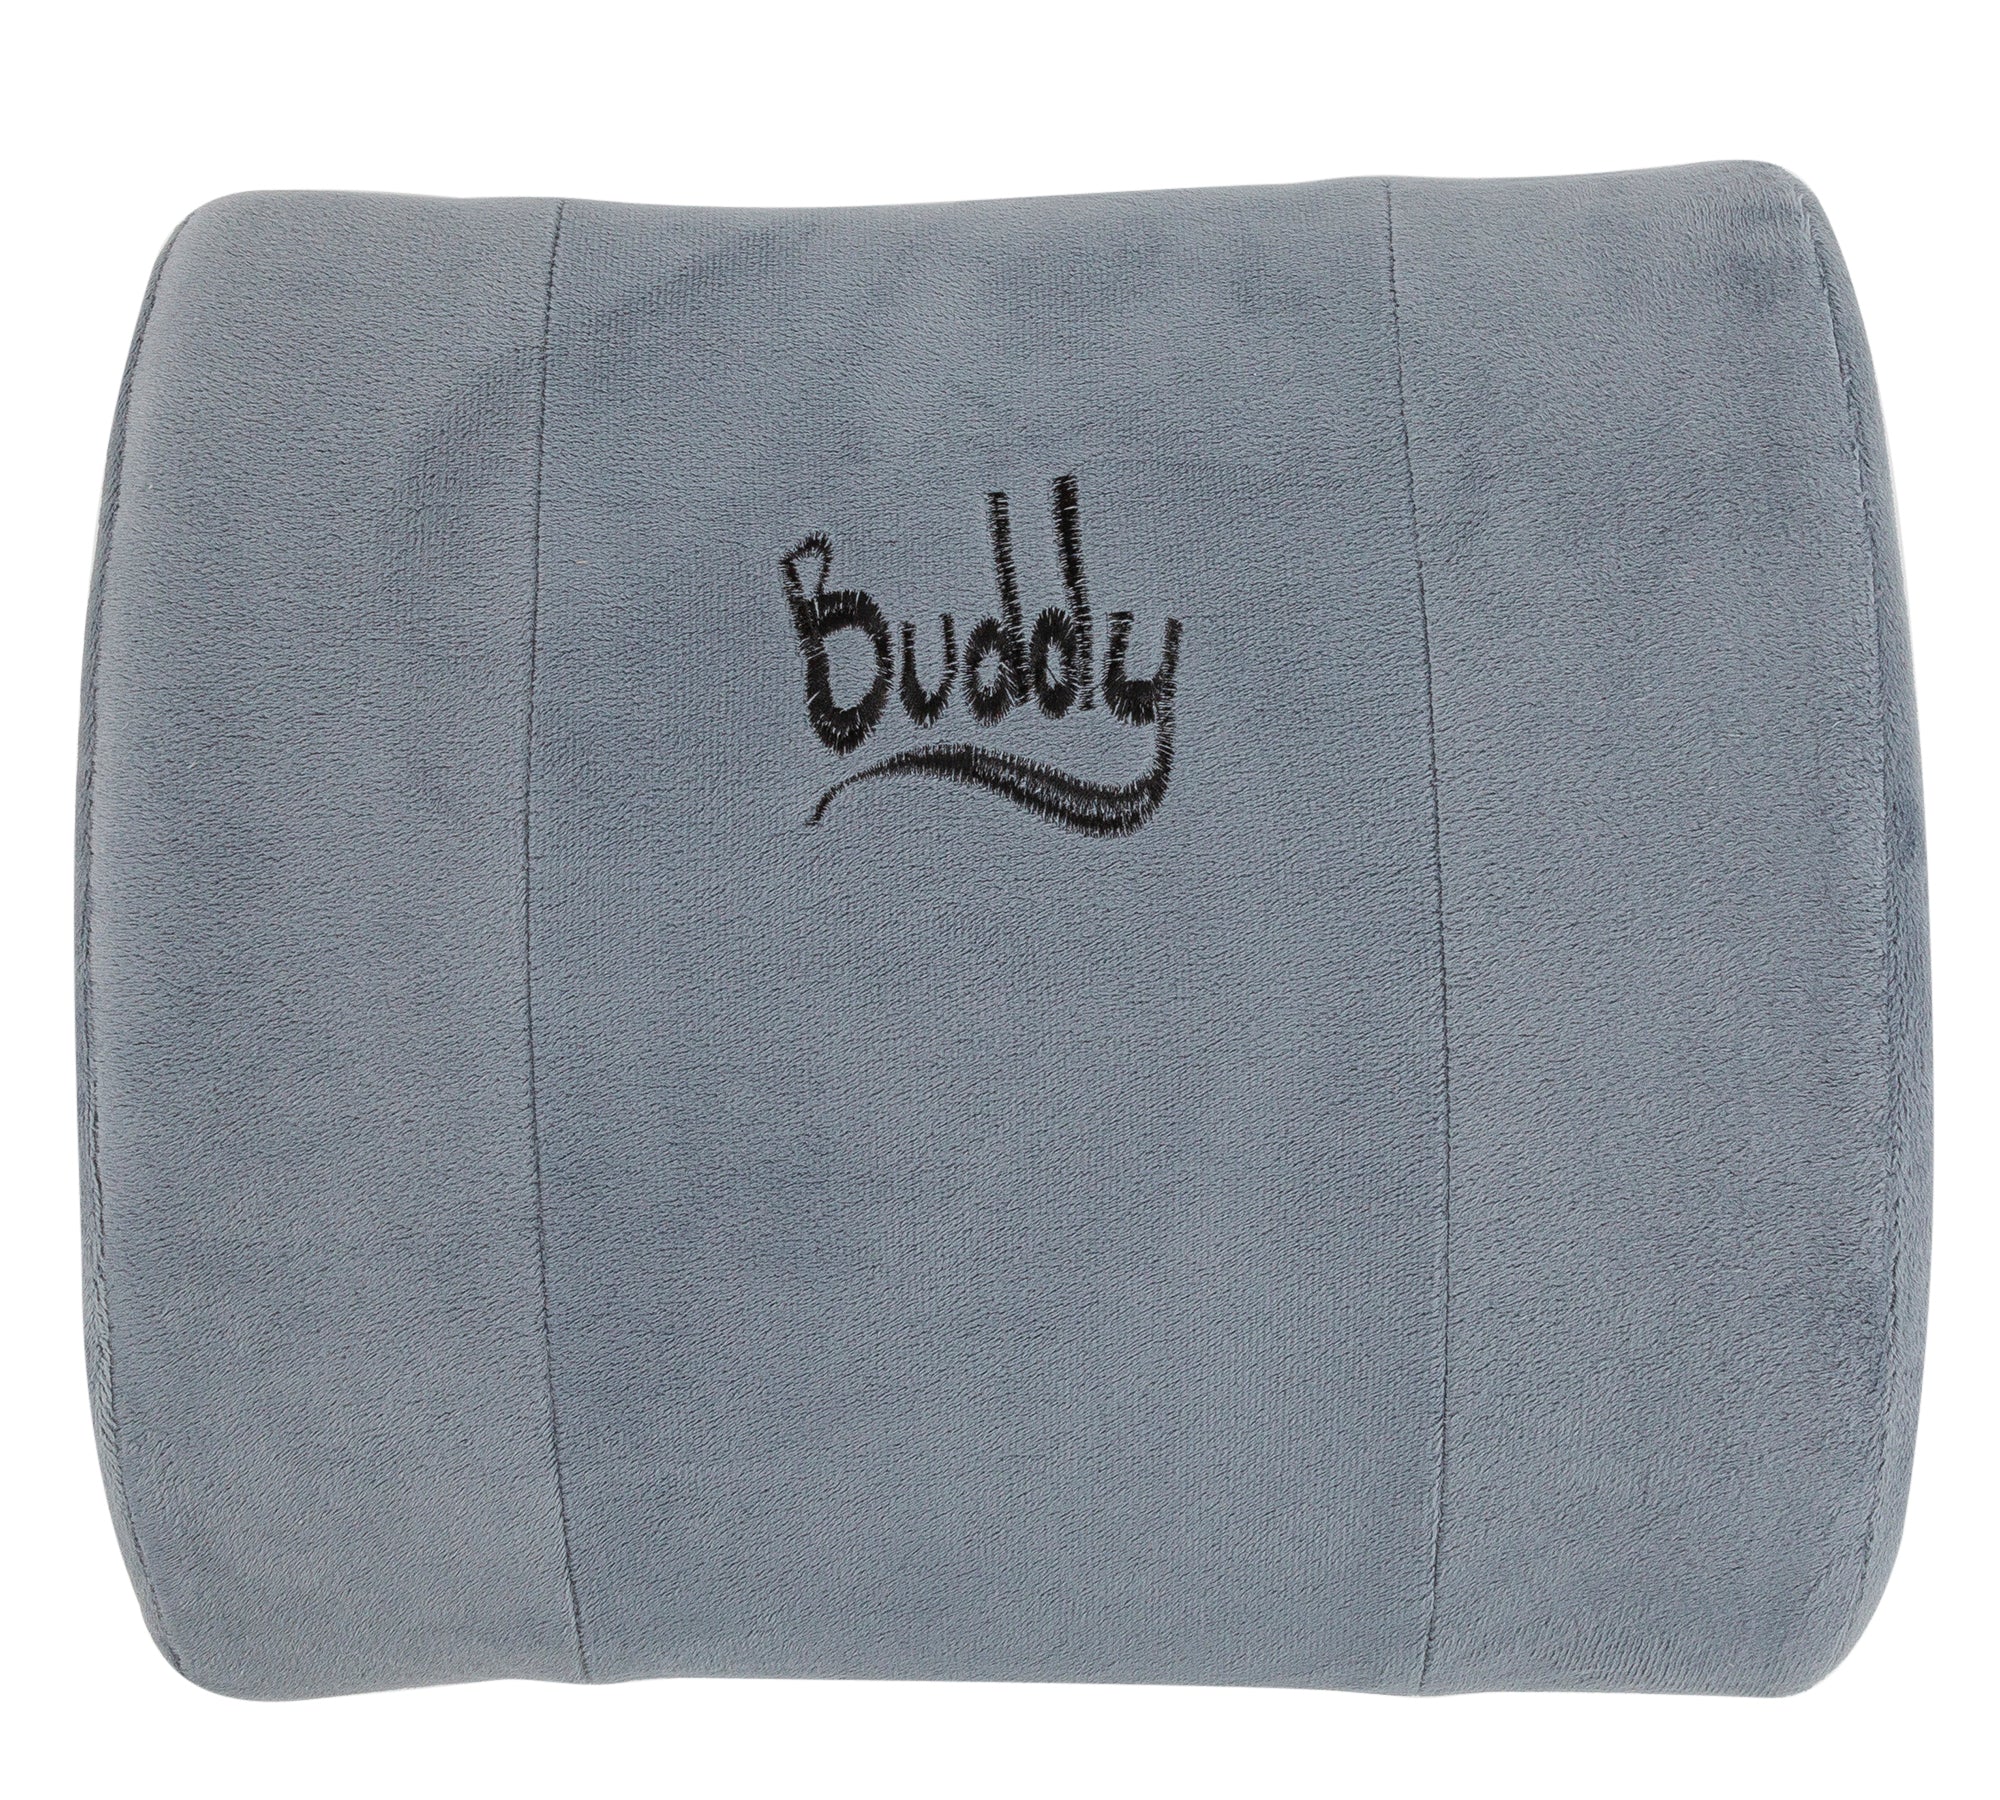 Buddy Lumbar Support Pillow